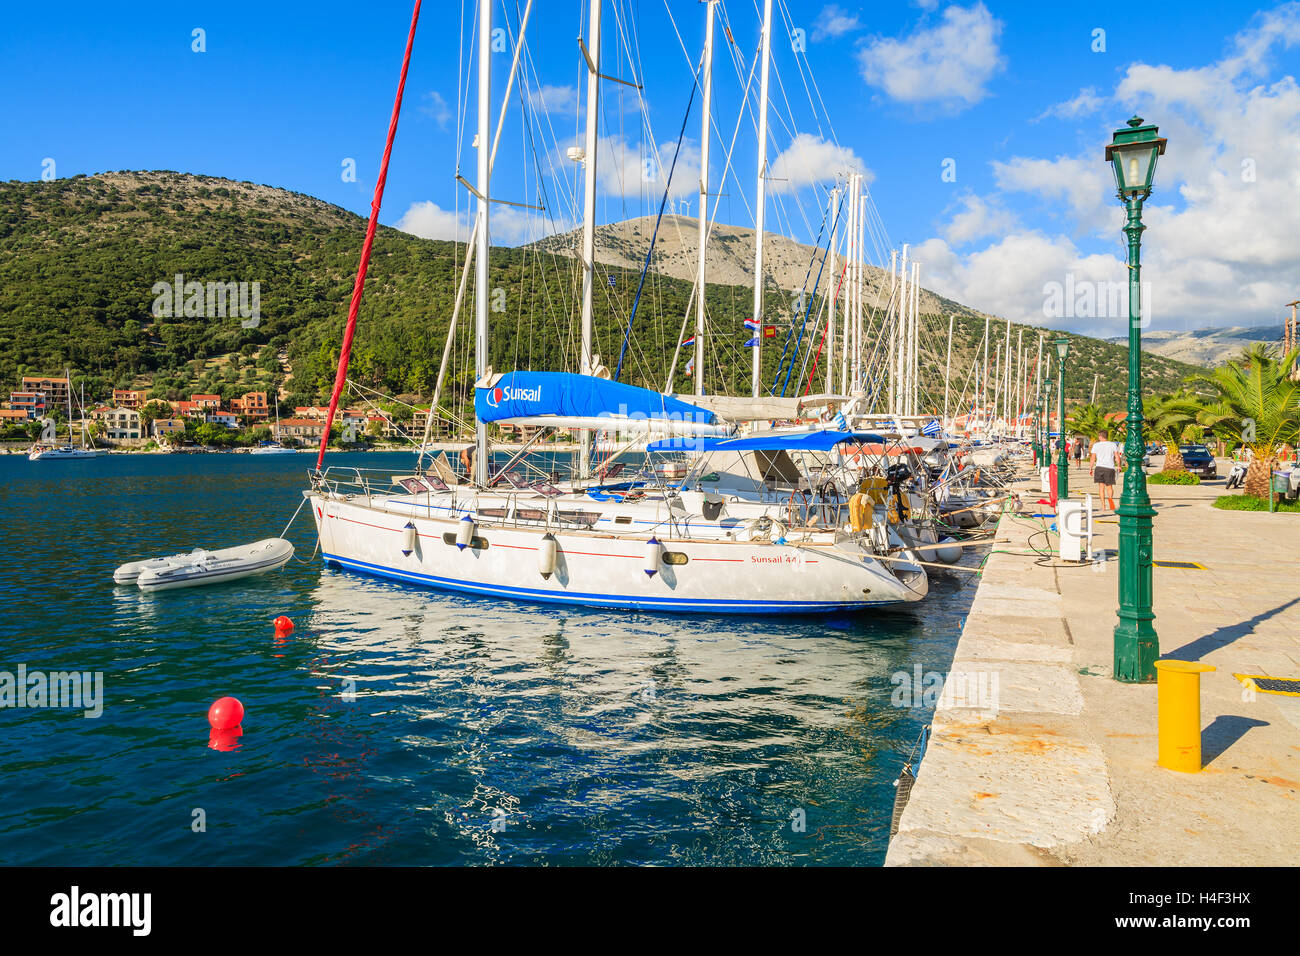 PORT D'AGIA EFIMIA, l'île de Céphalonie - Sep 16, 2014 : location de voiliers d'amarre en port grec d''Agia Efimia sur la côte de l'île de Céphalonie. La voile est un sport très populaire sur les îles Grecs. Banque D'Images